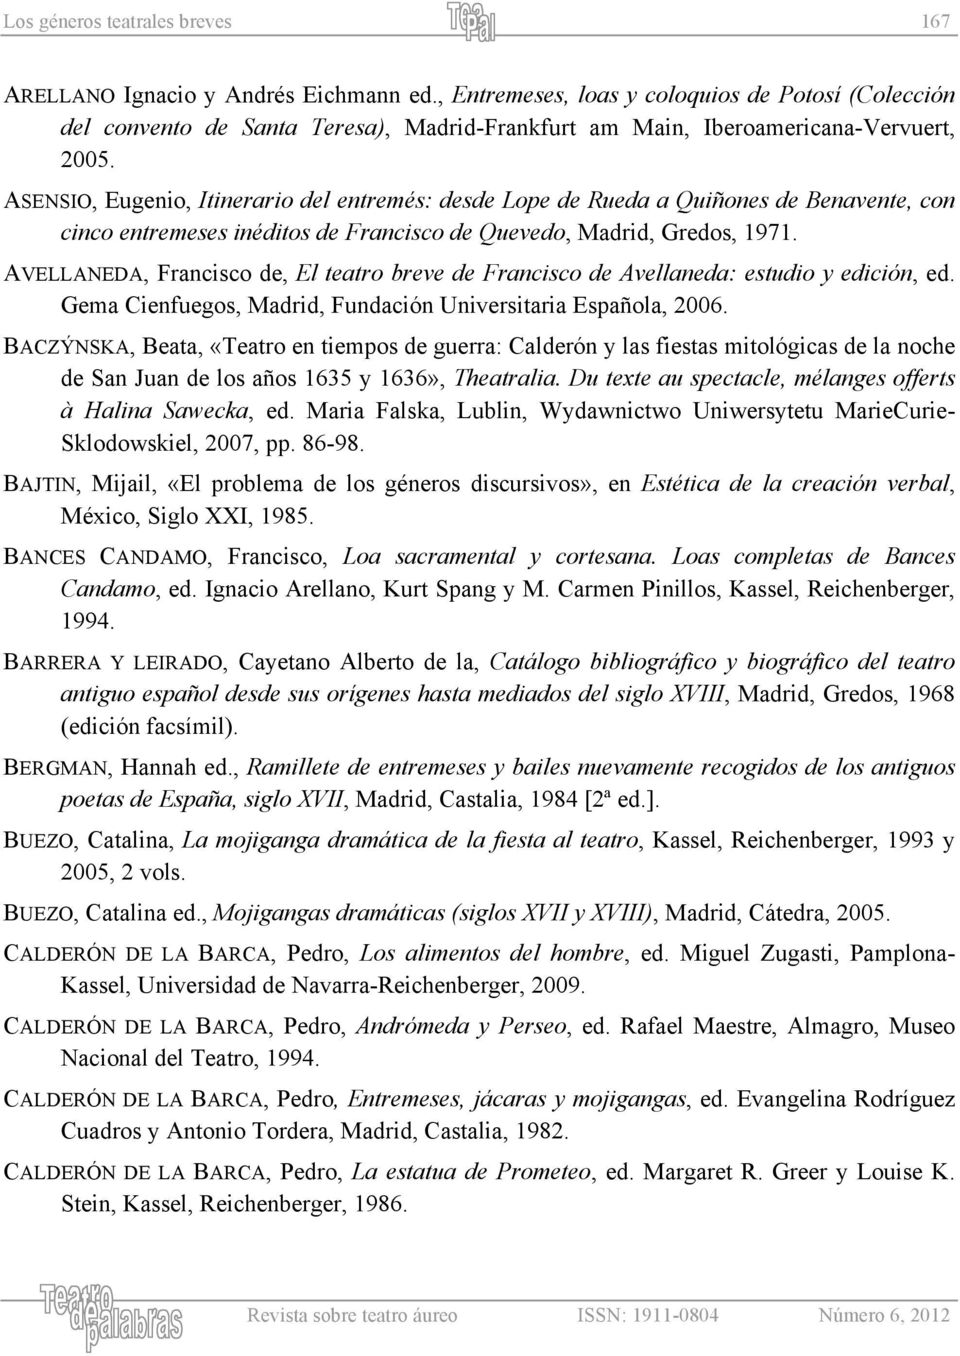 ASENSIO, Eugenio, Itinerario del entremés: desde Lope de Rueda a Quiñones de Benavente, con cinco entremeses inéditos de Francisco de Quevedo, Madrid, Gredos, 1971.